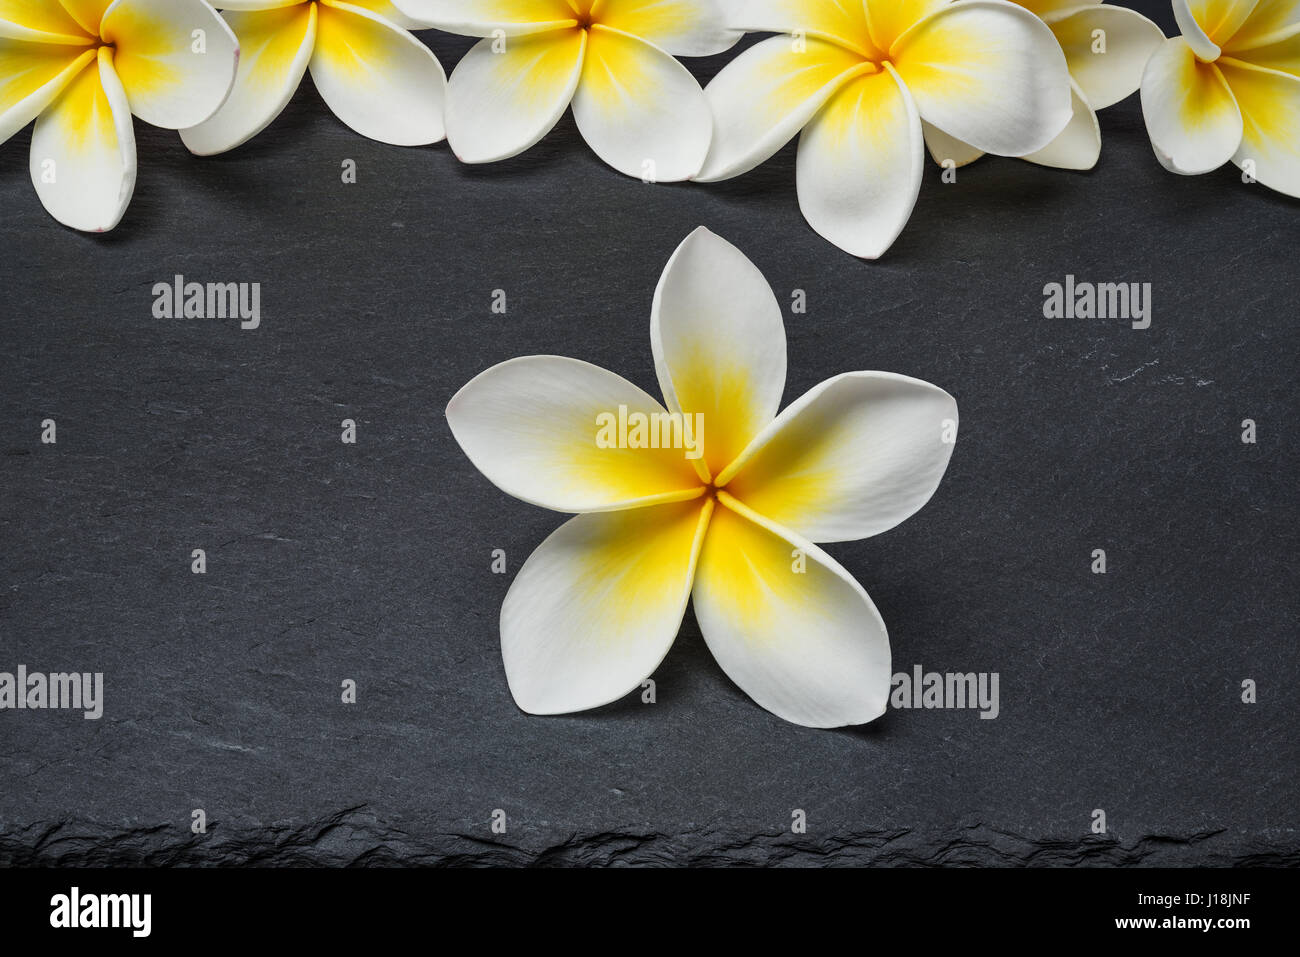 Frangipani Spa blanc plumeria fleurs sur fond ardoise noire Banque D'Images